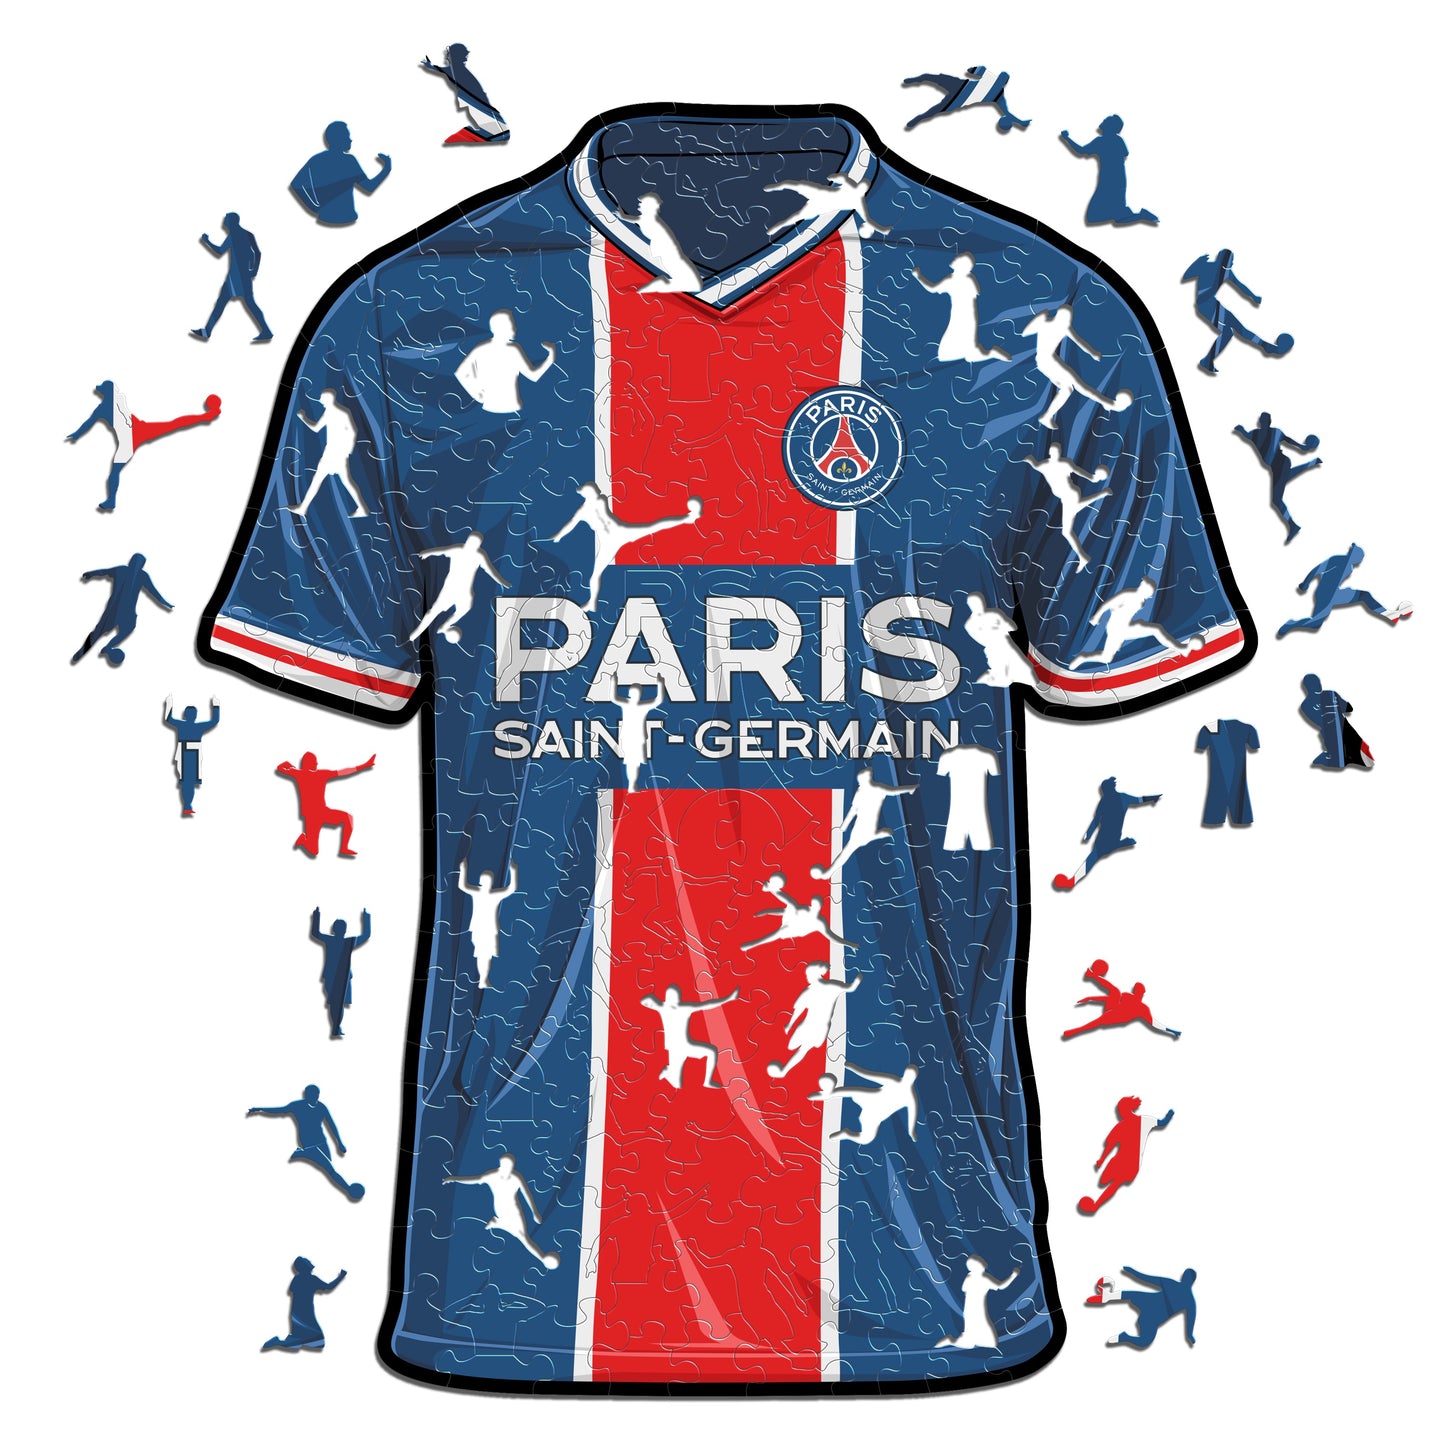 2 PACK Paris Saint-Germain FC® Crest + Jersey